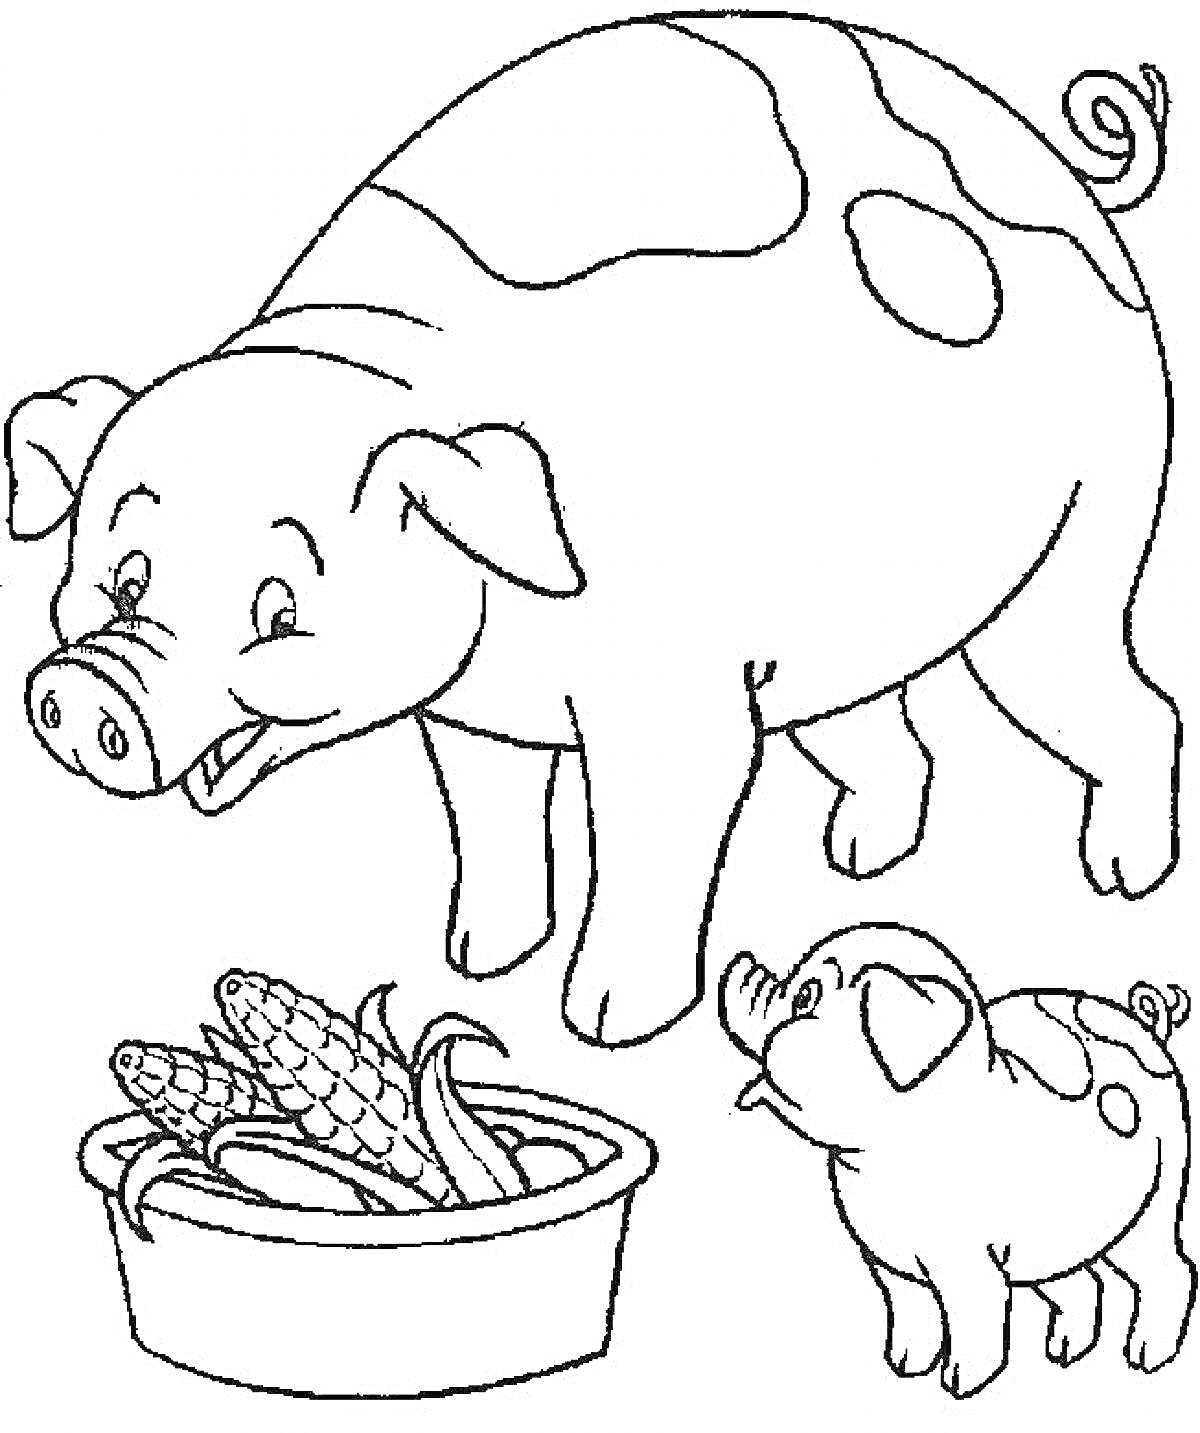 Свинья и поросенок возле миски с початками кукурузы